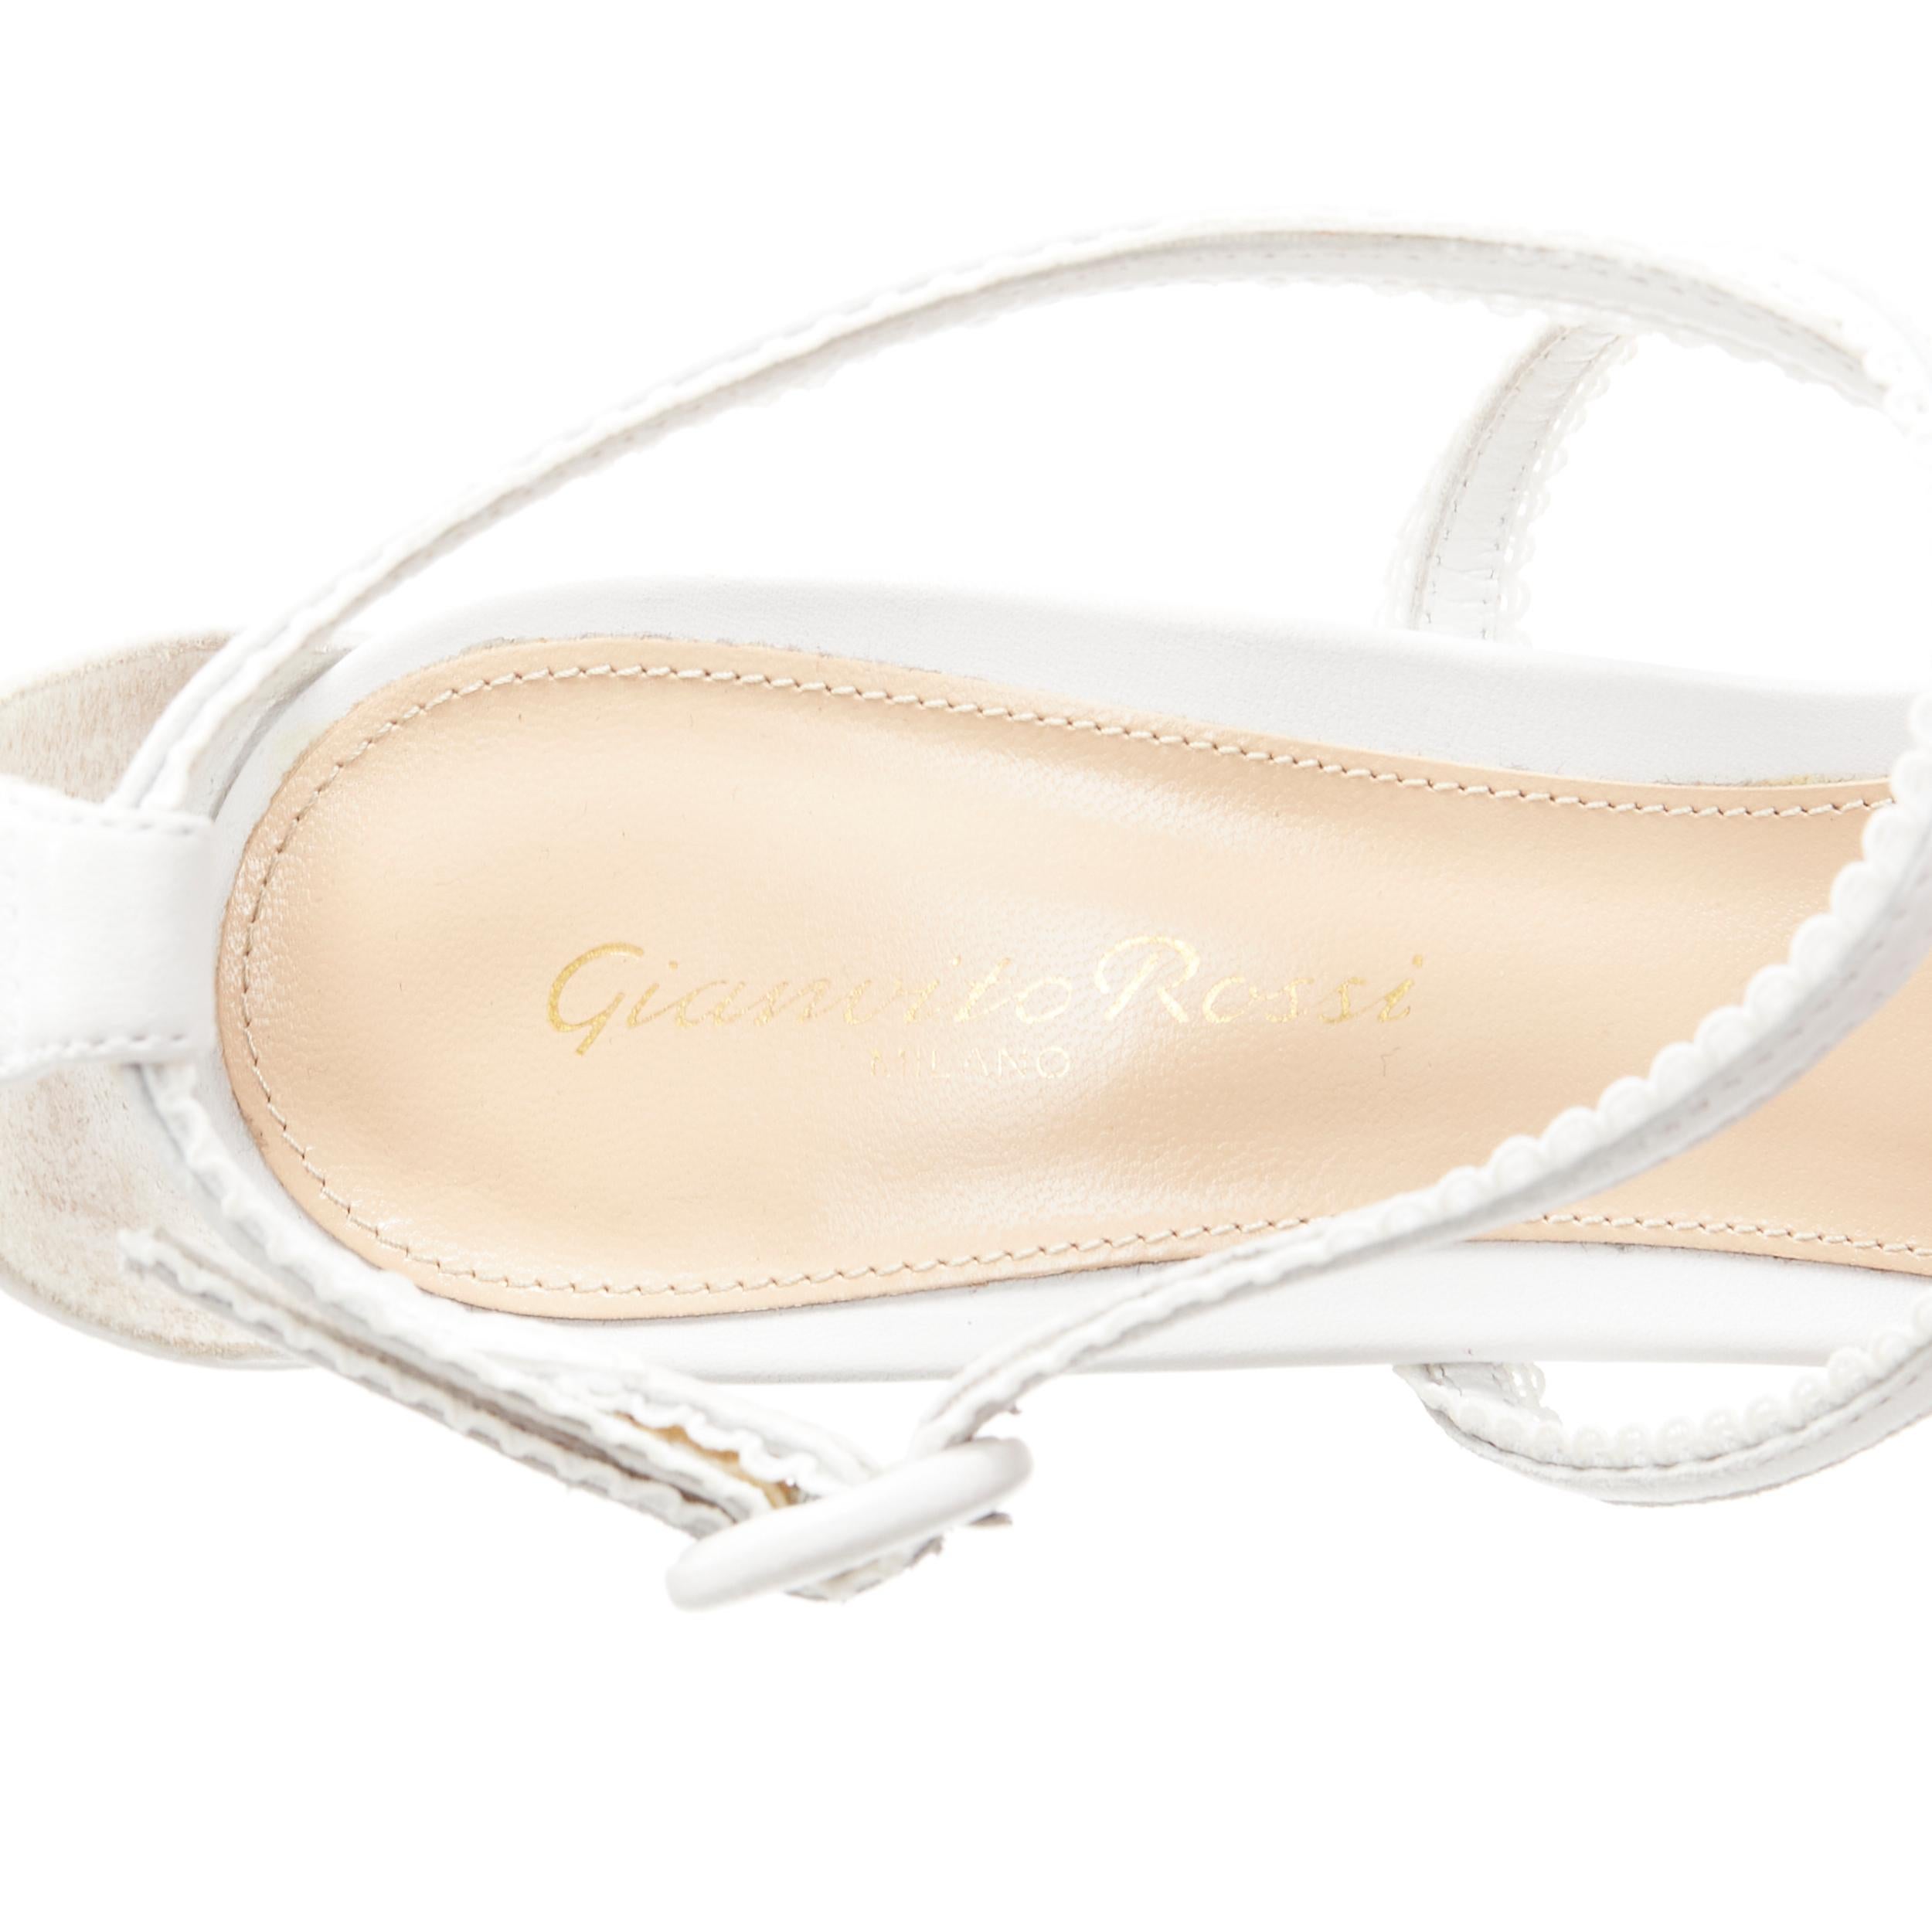 GIANVITO ROSSI white scalloped lace trim strappy high heel sandals EU39.5 2